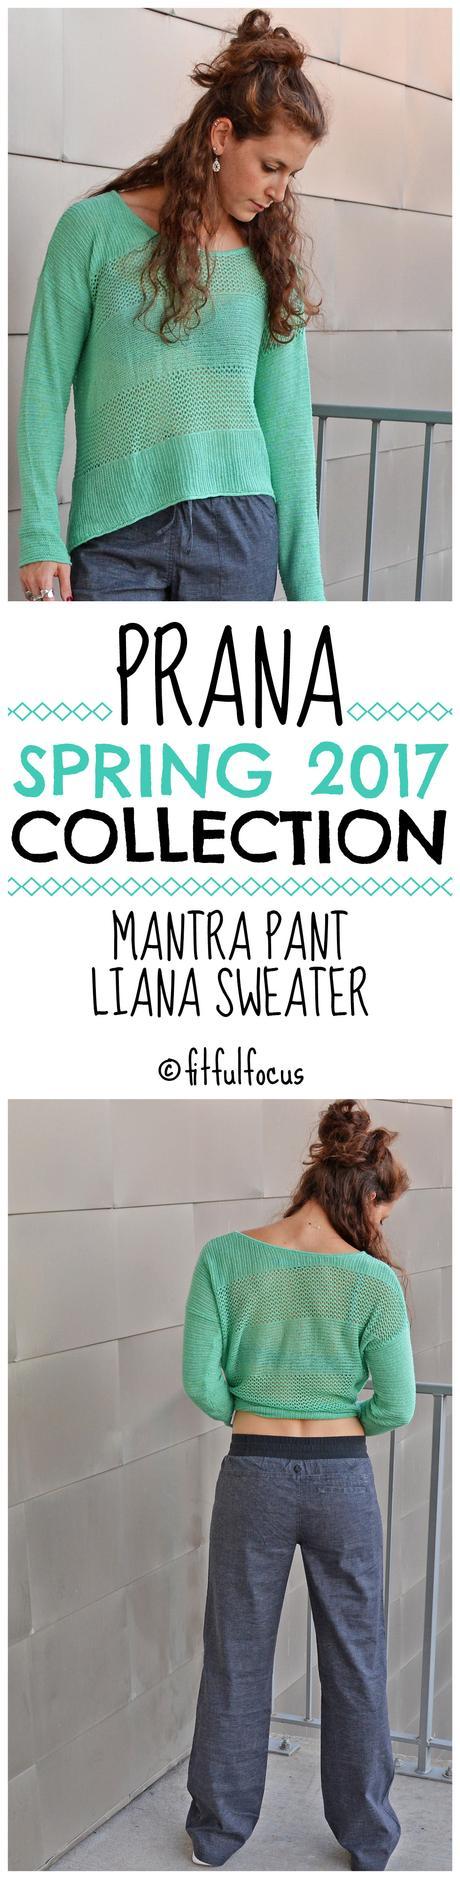 Prana Spring 2017 Collection